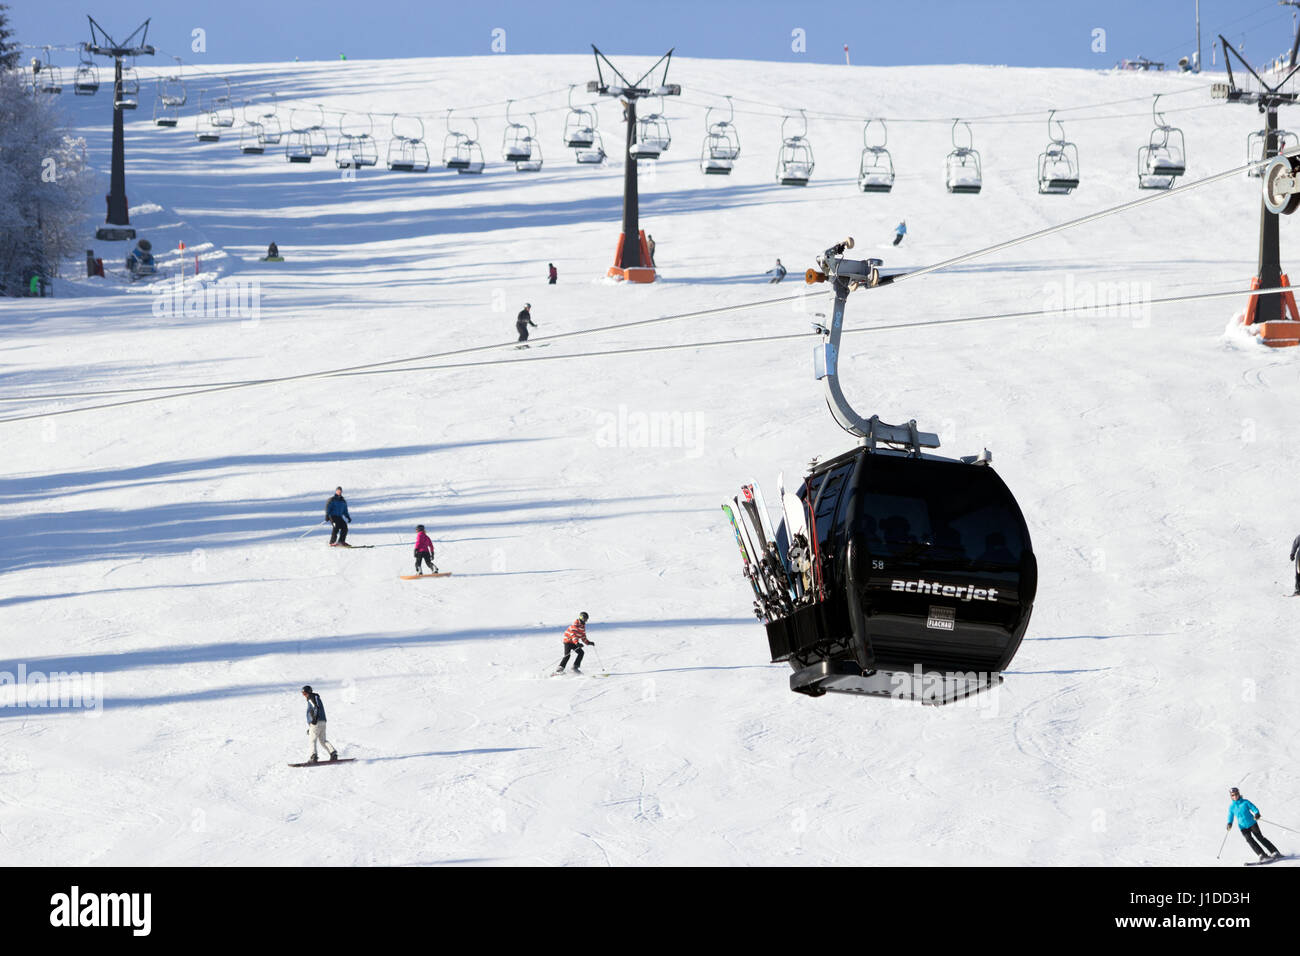 FLACHAU, Österreich - 29. Dezember 2012: Skilift Kabel Stand der Piste in den österreichischen Alpen hinauf. Diese Pisten sind Teil des Netzwerks Ski-Armada, die la Stockfoto